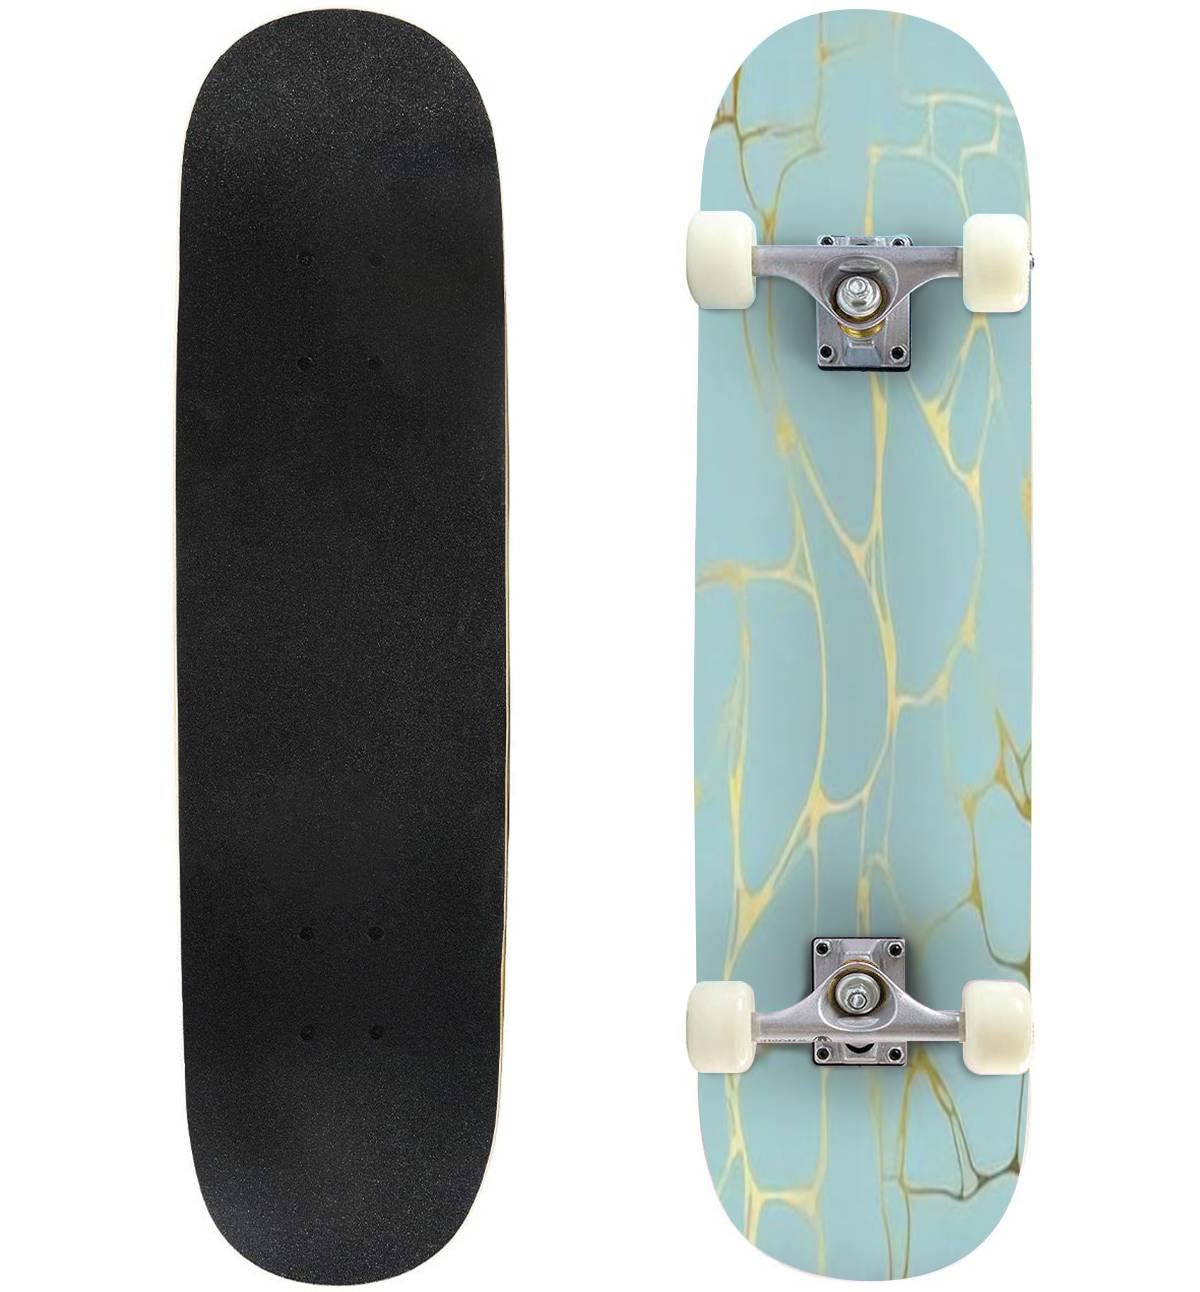 送料無料Delicate Texture Marble Decorative for Printing Sales Design Skateboards for Beginners 31x8 Maple Double Kick C